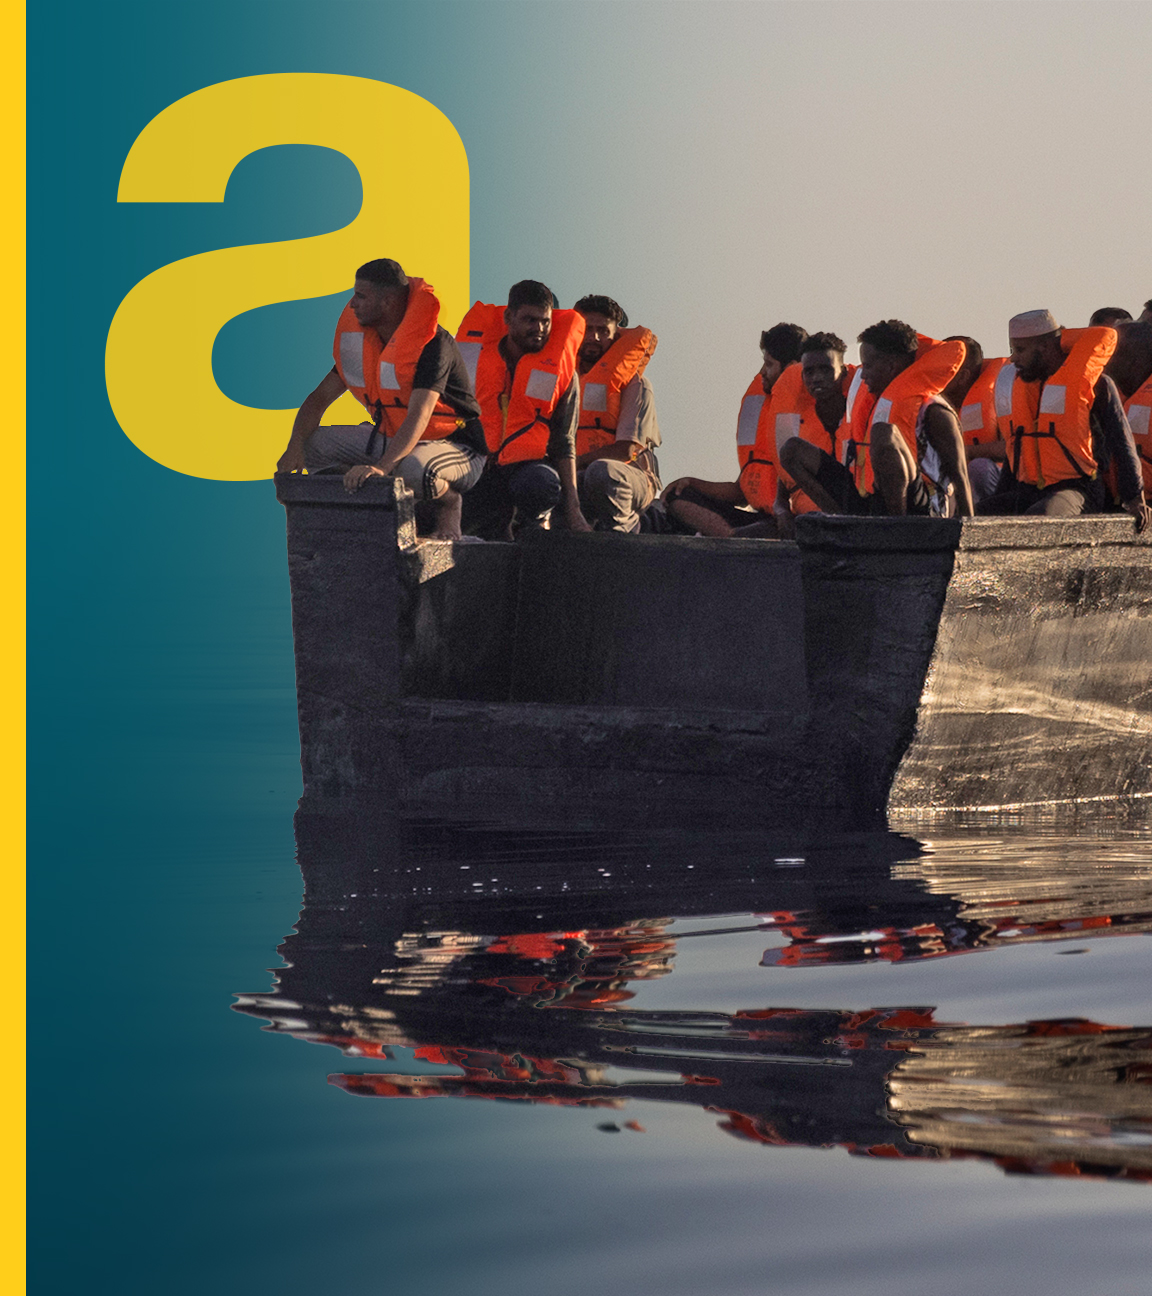 Auf dem Bild ist ein Boot mit geflüchteten Personen auf dem Mittelmeer zu sehen.